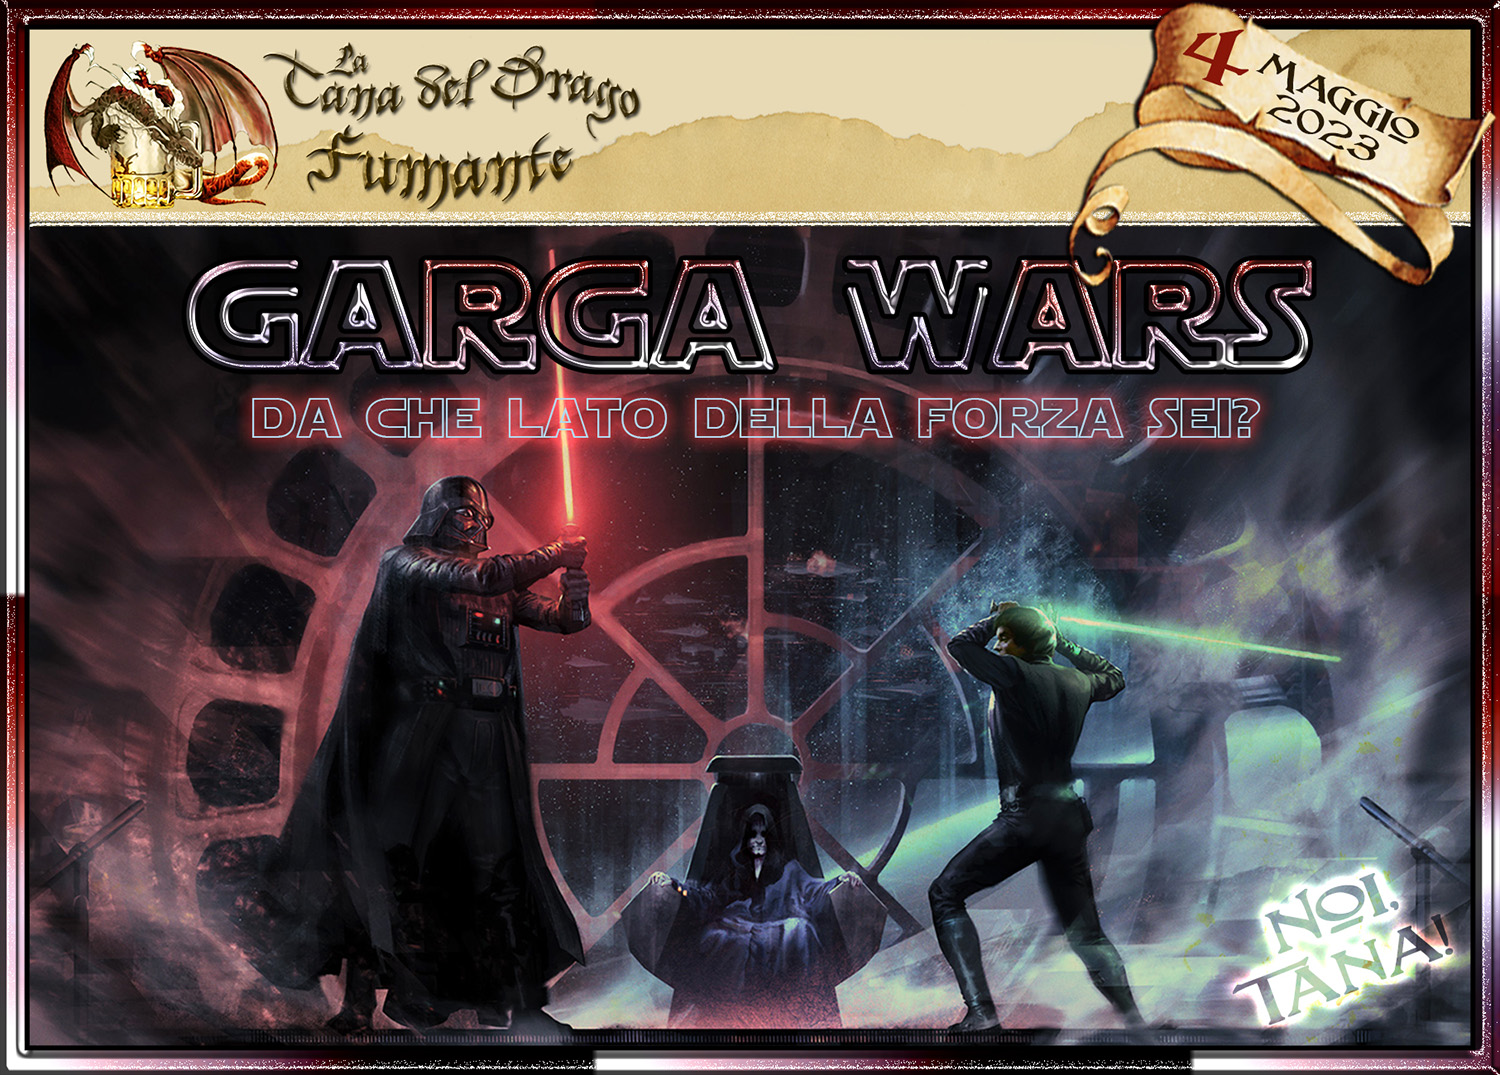 Garga-Wars 2023 alla Tana del Drago Fumante™